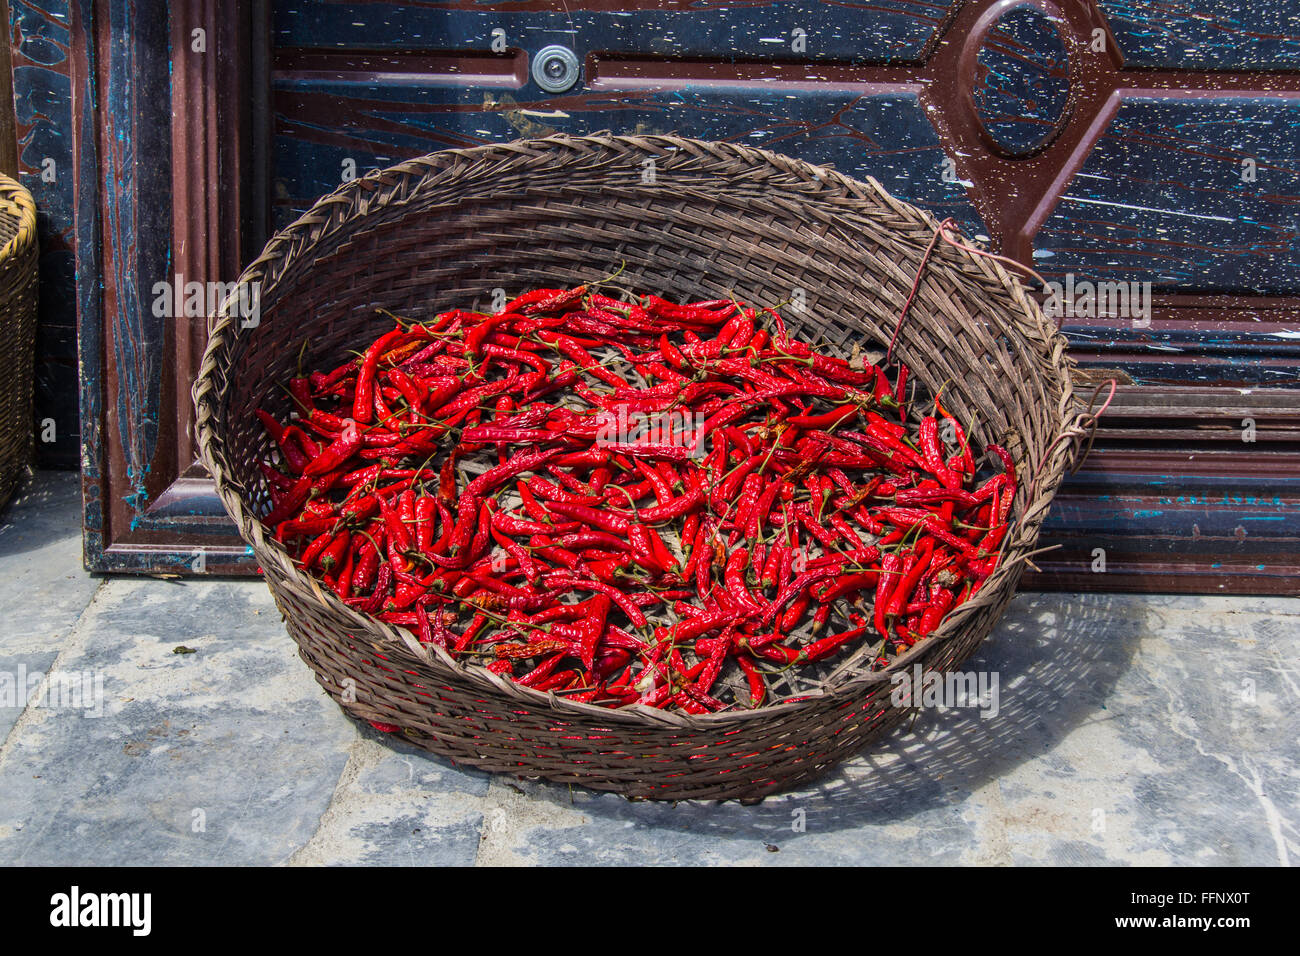 Peperoncino rosso in un cestello nella spina dorsale del drago terrazze di riso. Cina. Foto Stock